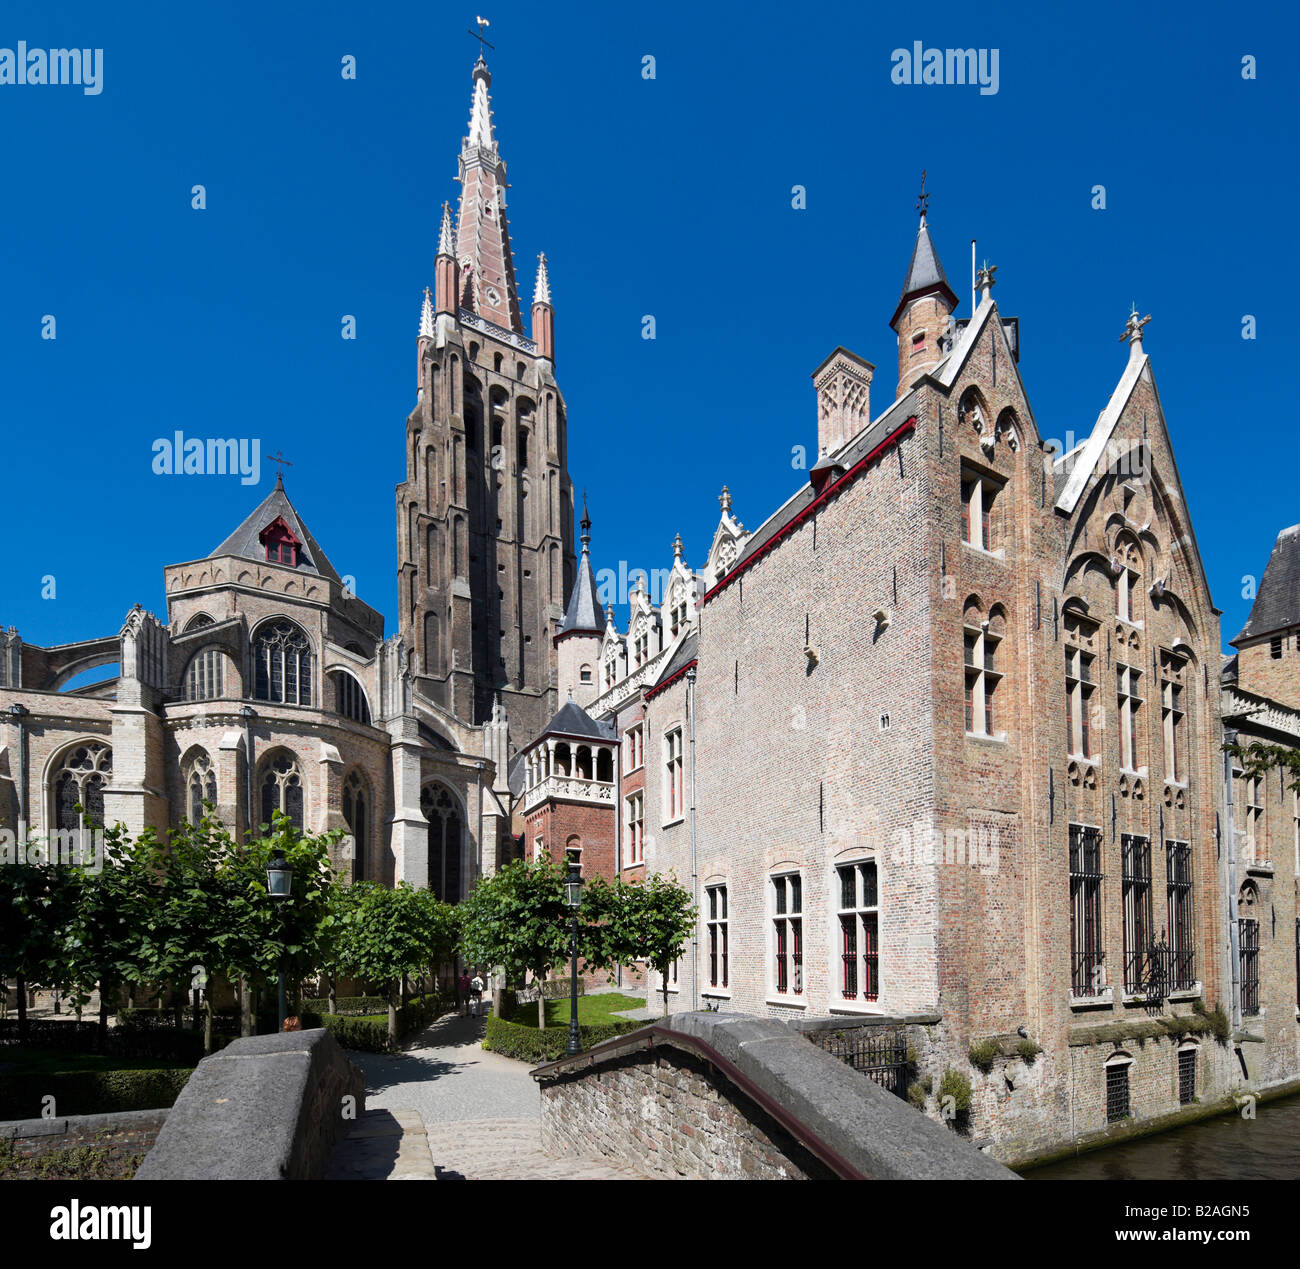 Museo Gruuthuse e Onze Lieve Vrouwekerk chiesa nel centro della città vecchia di Bruges, Belgio Foto Stock